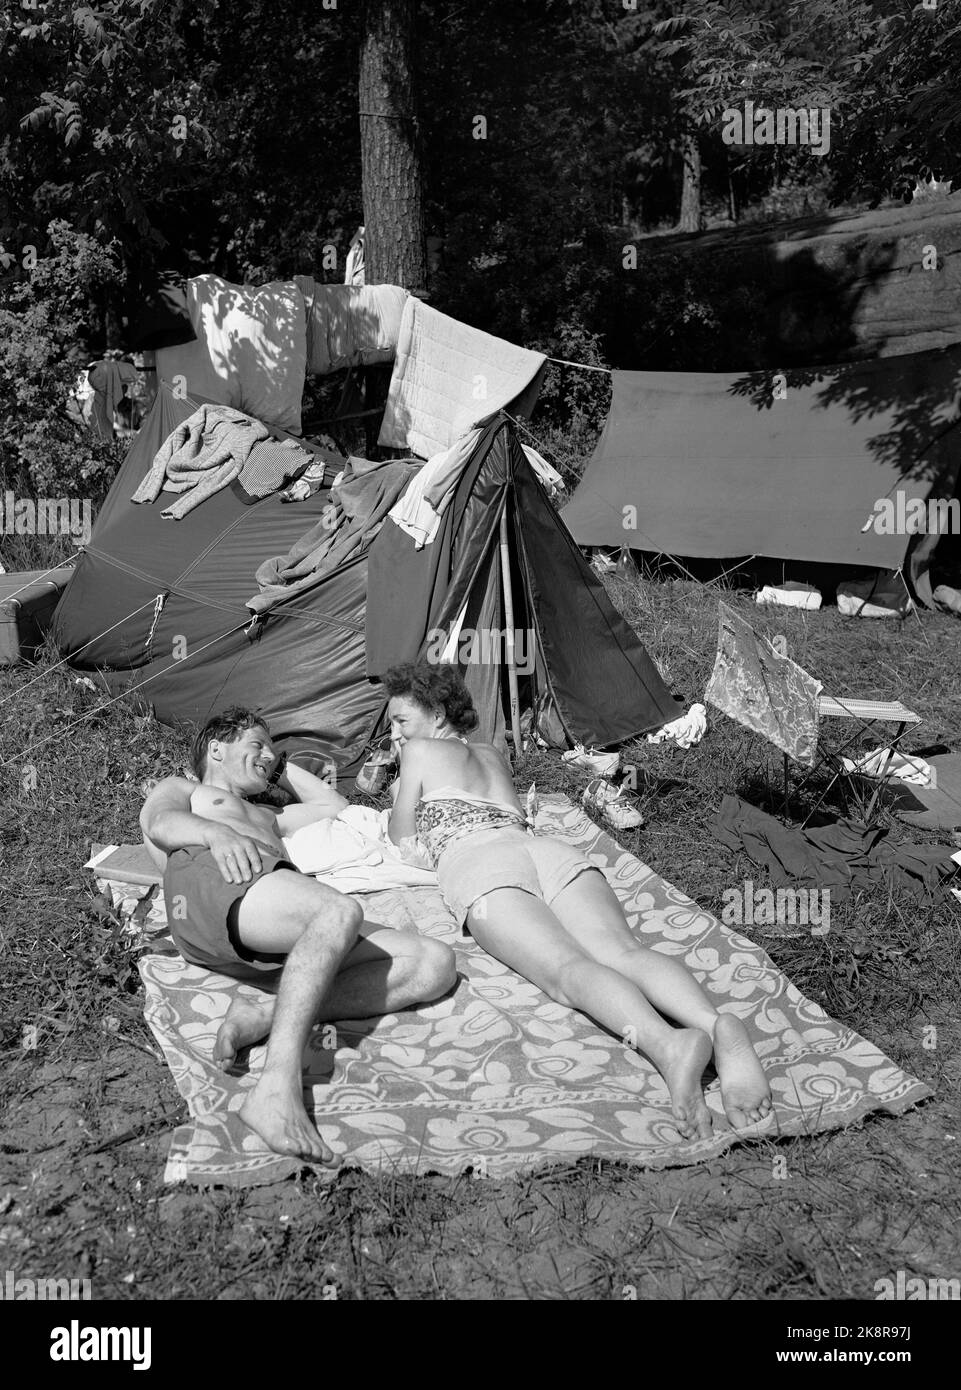 Holmsbu/Buskerud 19530614. Sommeratmosphäre aus Holmsbu. Ein glückliches Paar, das sich vor ihrem Zelt in Holmsbu sonnt. Schwimmen. Sommerurlaub. Altmodisch. Foto: NTB / NTB Stockfoto